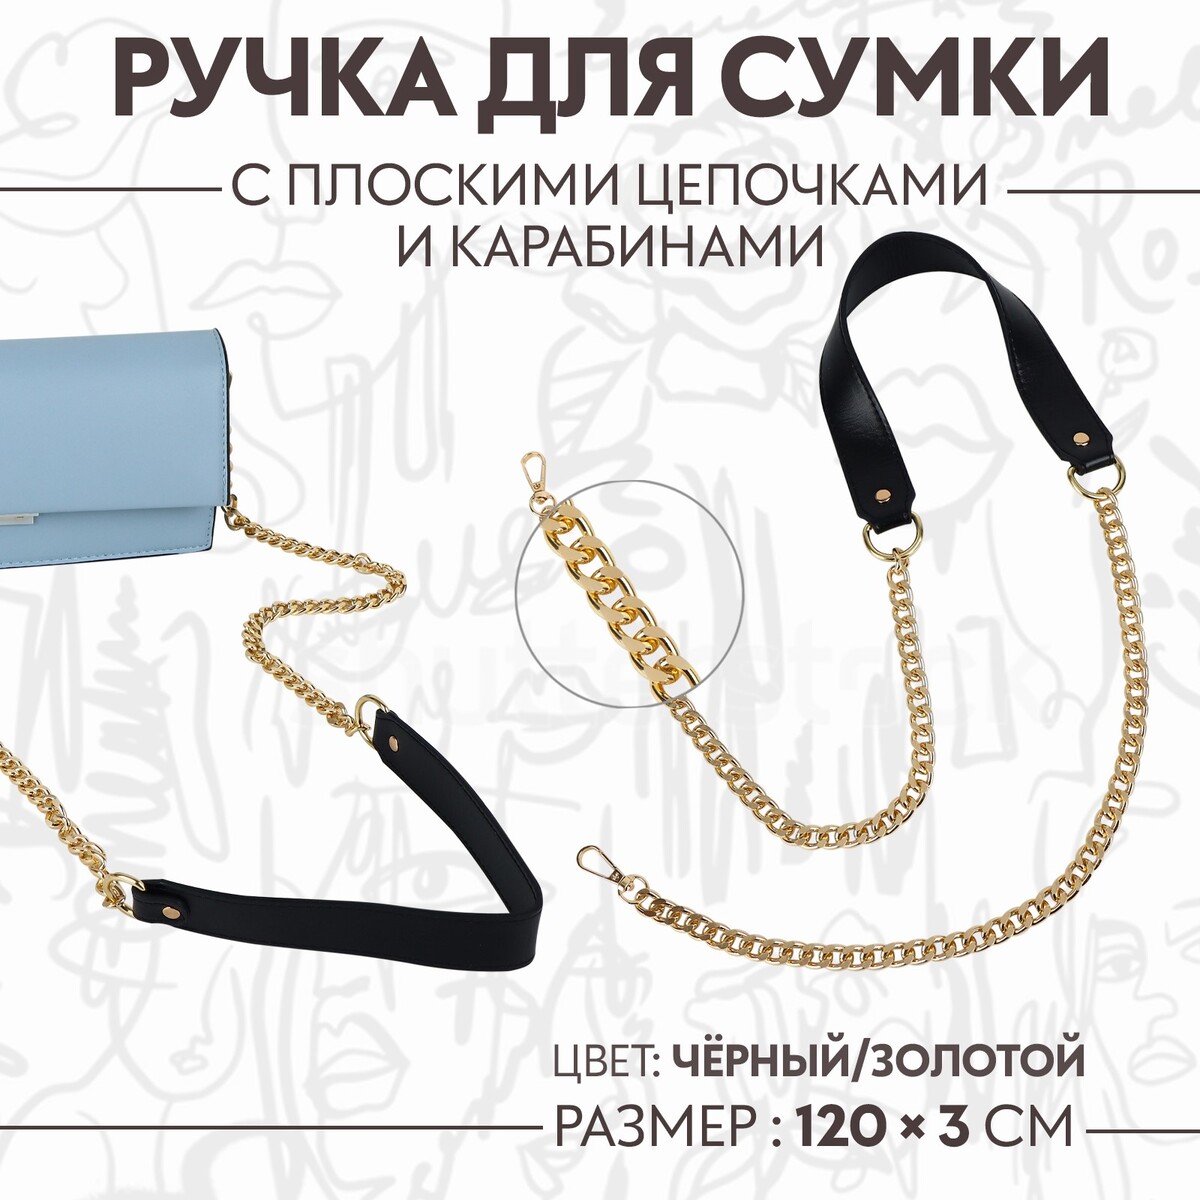 Ручка для сумки, с плоскими цепочками и карабинами, 120 × 3 см, цвет черный/золотой ручка для сумки бусы d 14 мм 60 см золотой